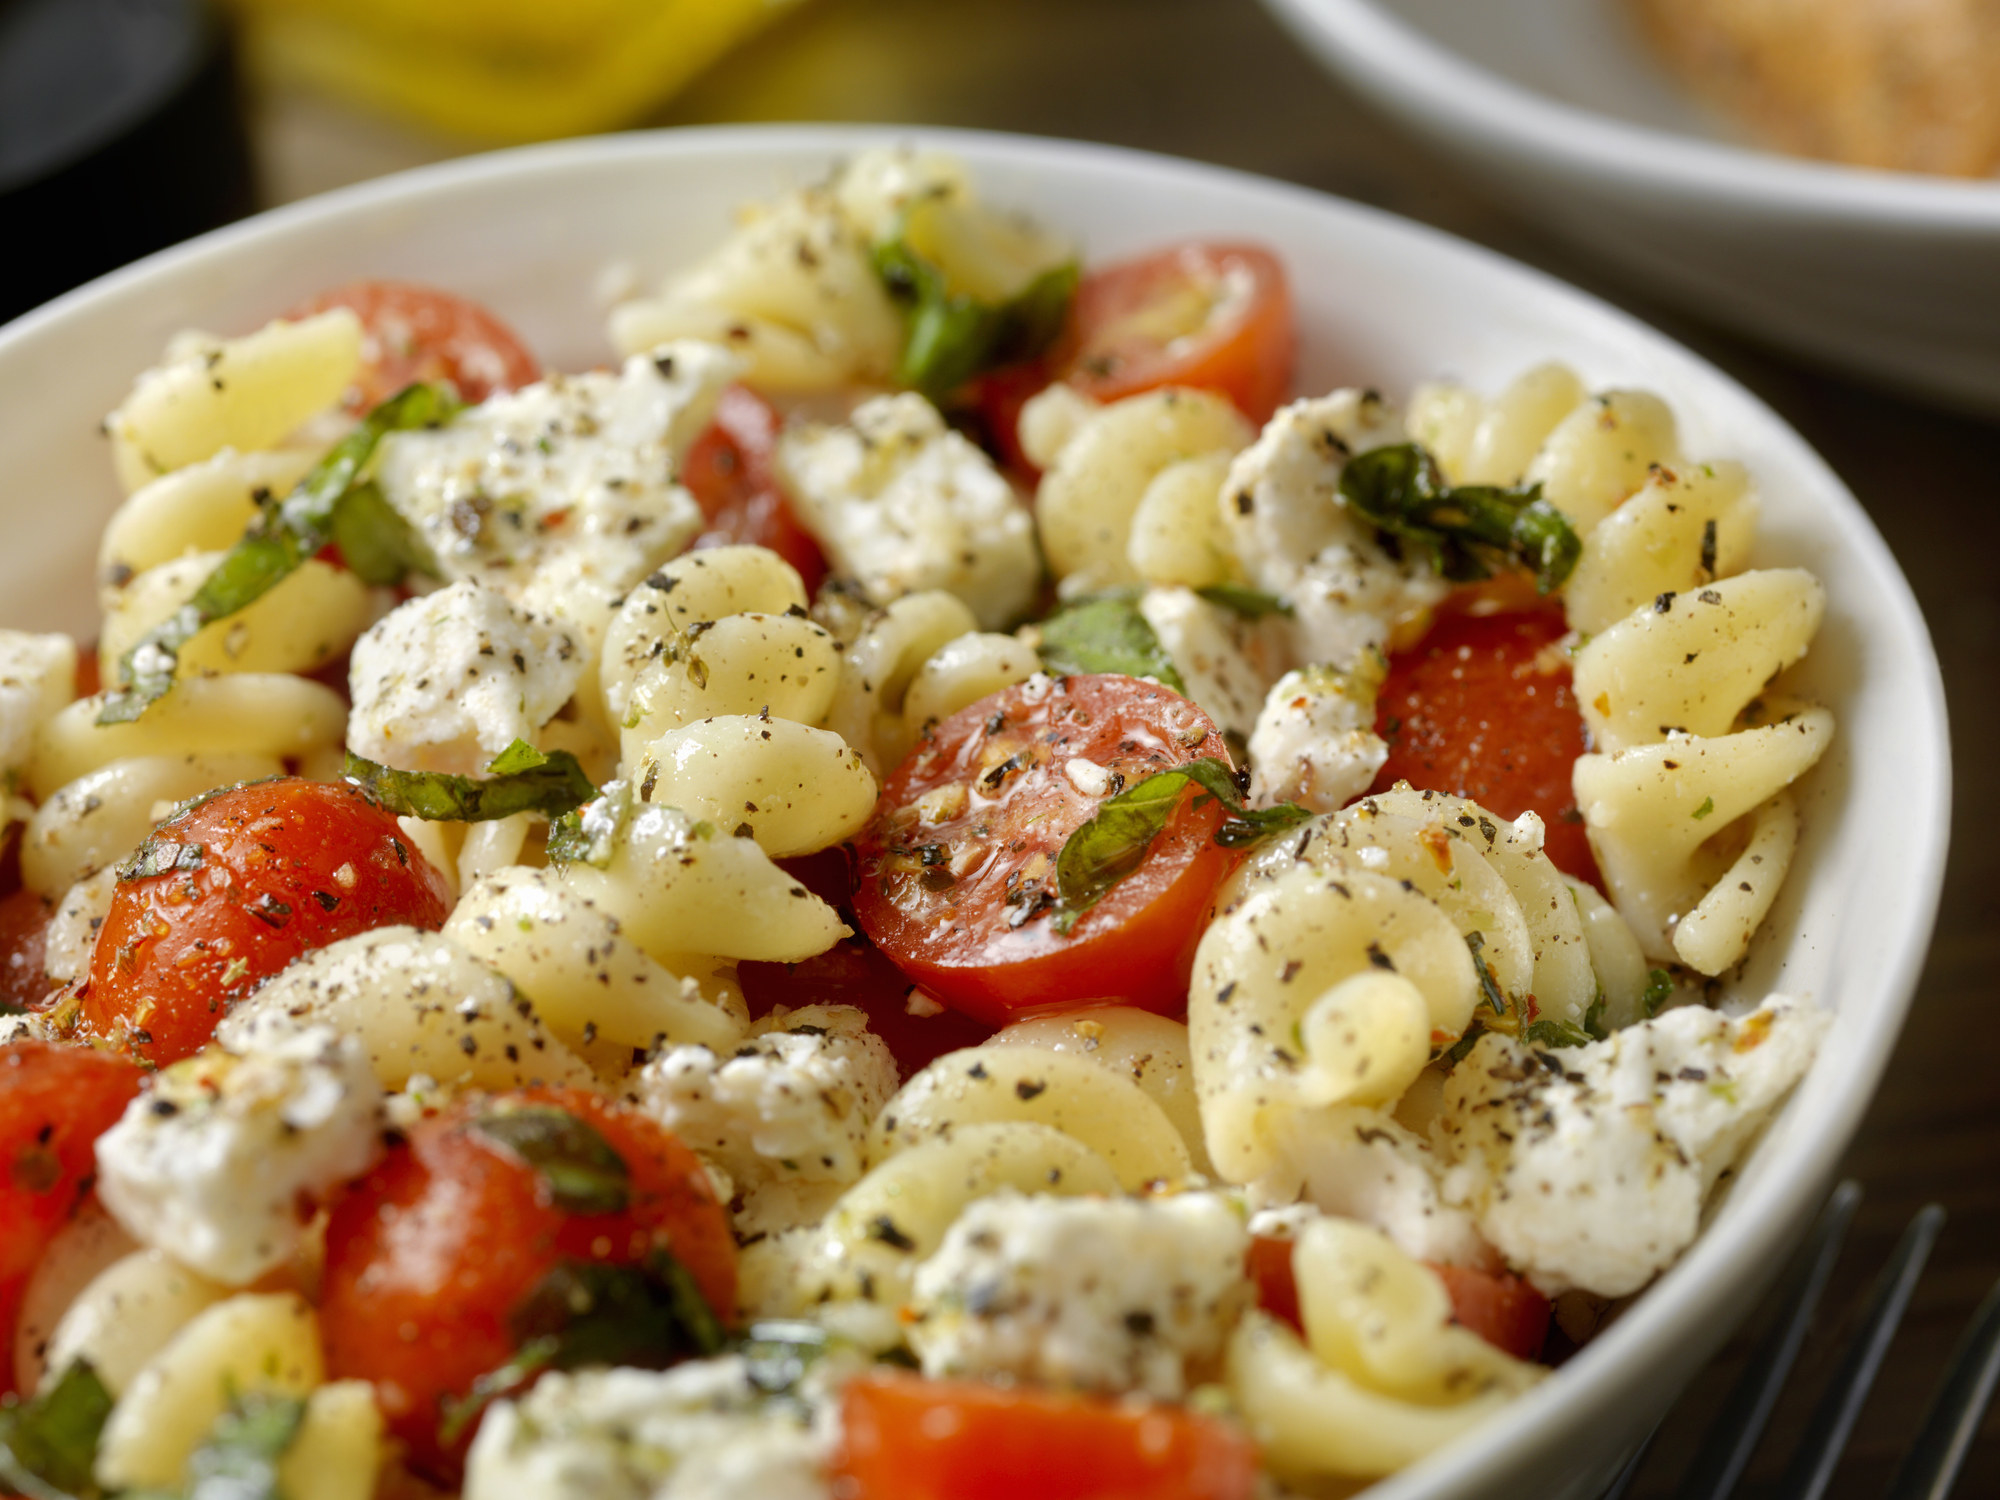 Tomato and mozzarella pasta salad.